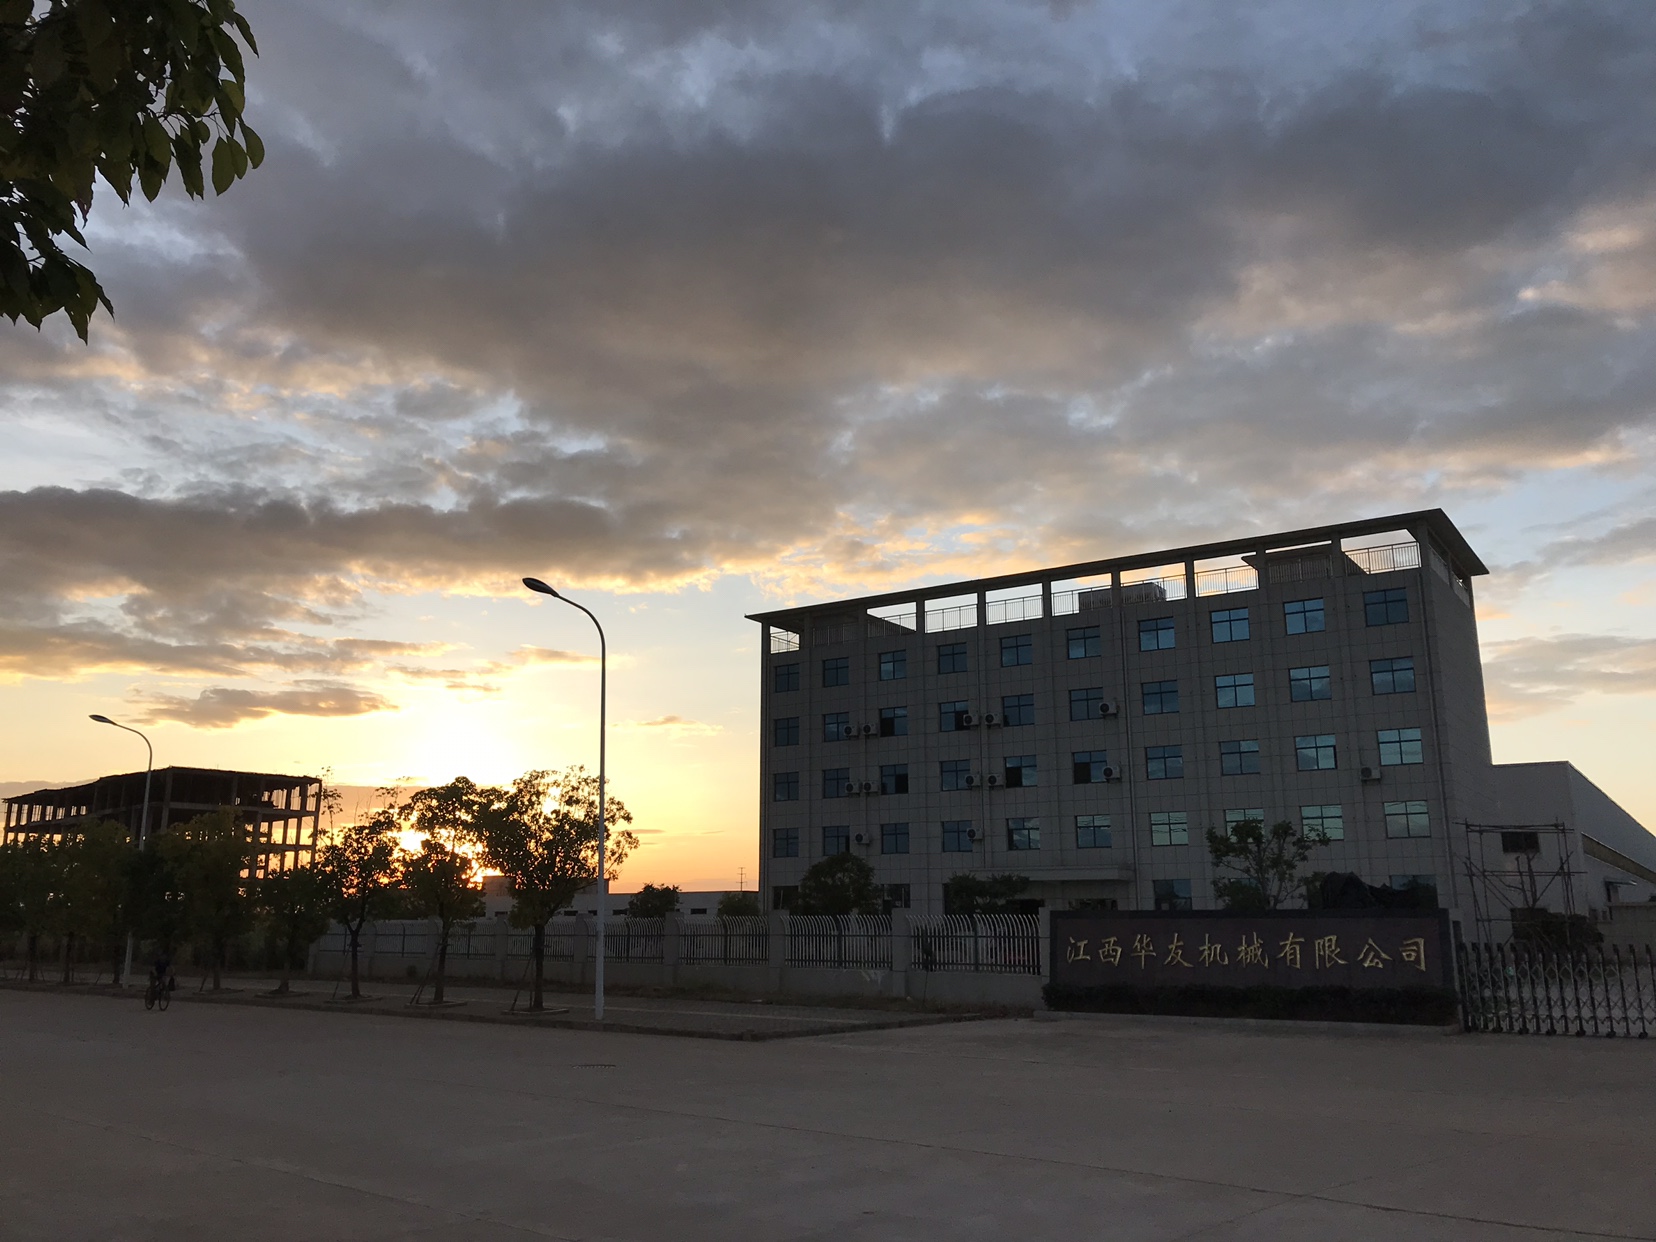 公司简介：   江西华友机械有限公司成立于1998年，坐落于才子之乡江西临川,注册资金500万元，是一家集研发、生产、经营齿轮泵的厂家，其前身为抚州市临川机械厂，…